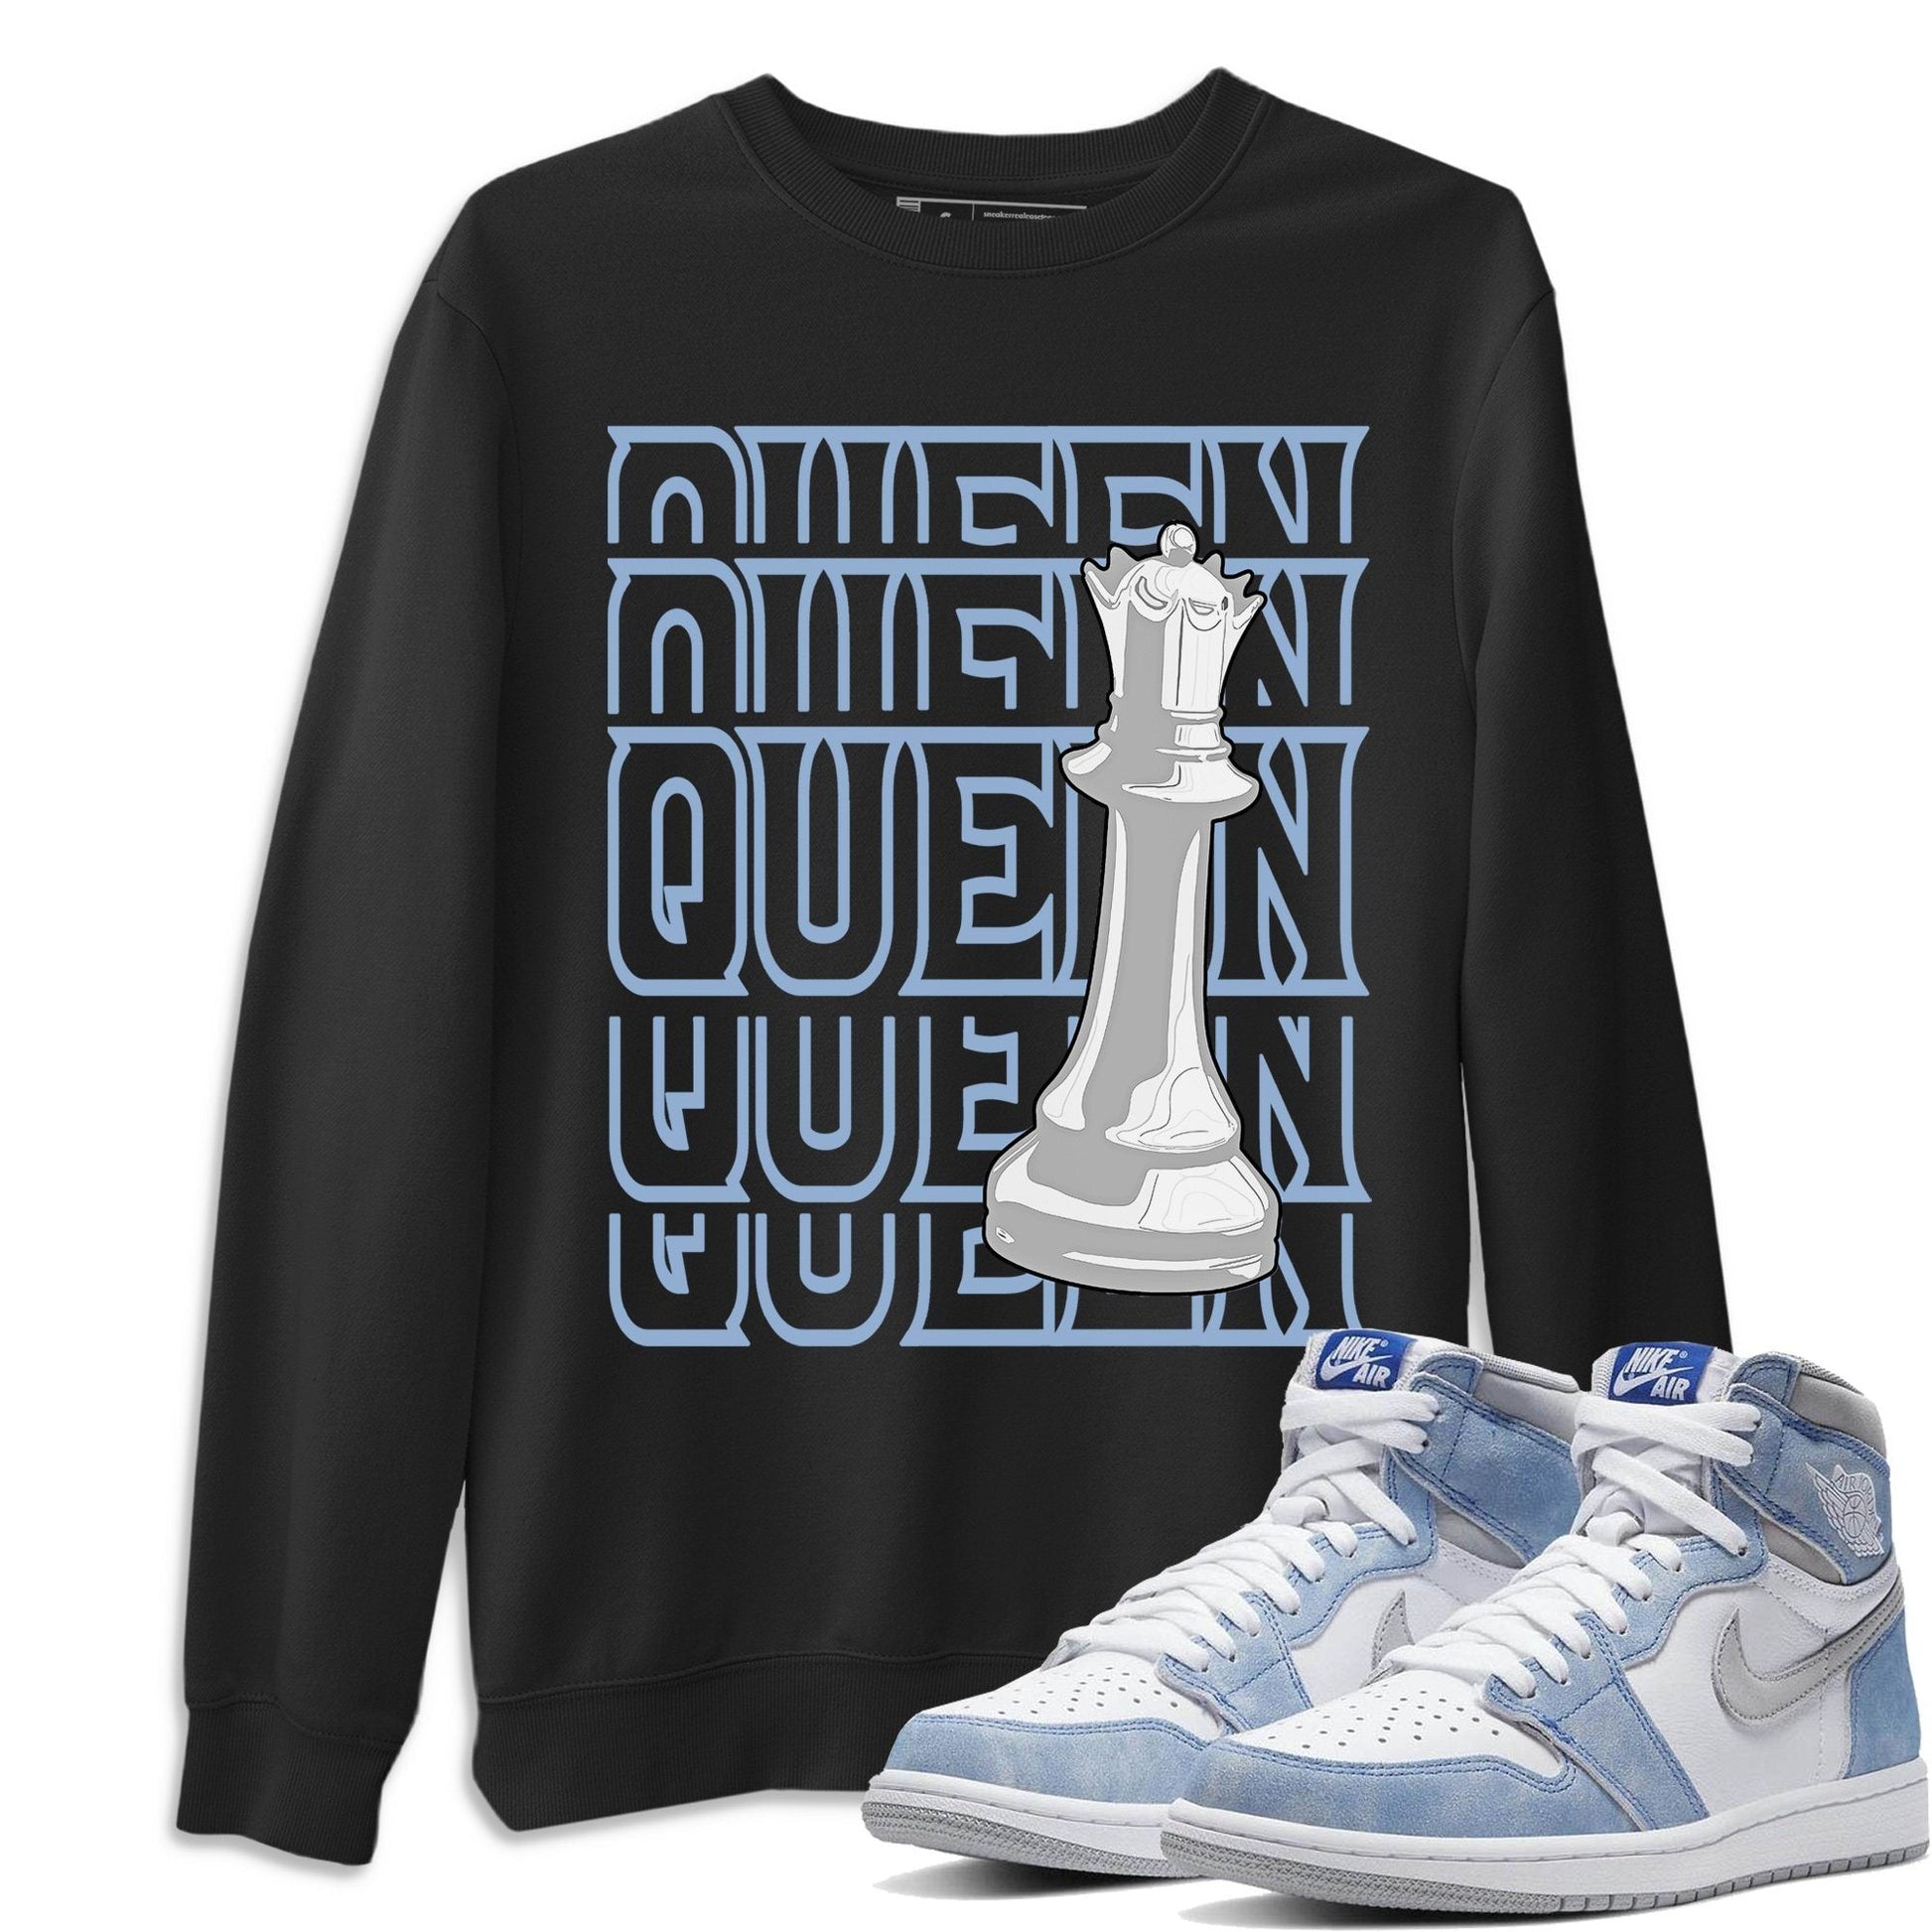 Jordan 1 Hyper Royal Sneaker Match Tees Queen Sneaker Tees Jordan 1 Hyper Royal Sneaker Release Tees Unisex Shirts